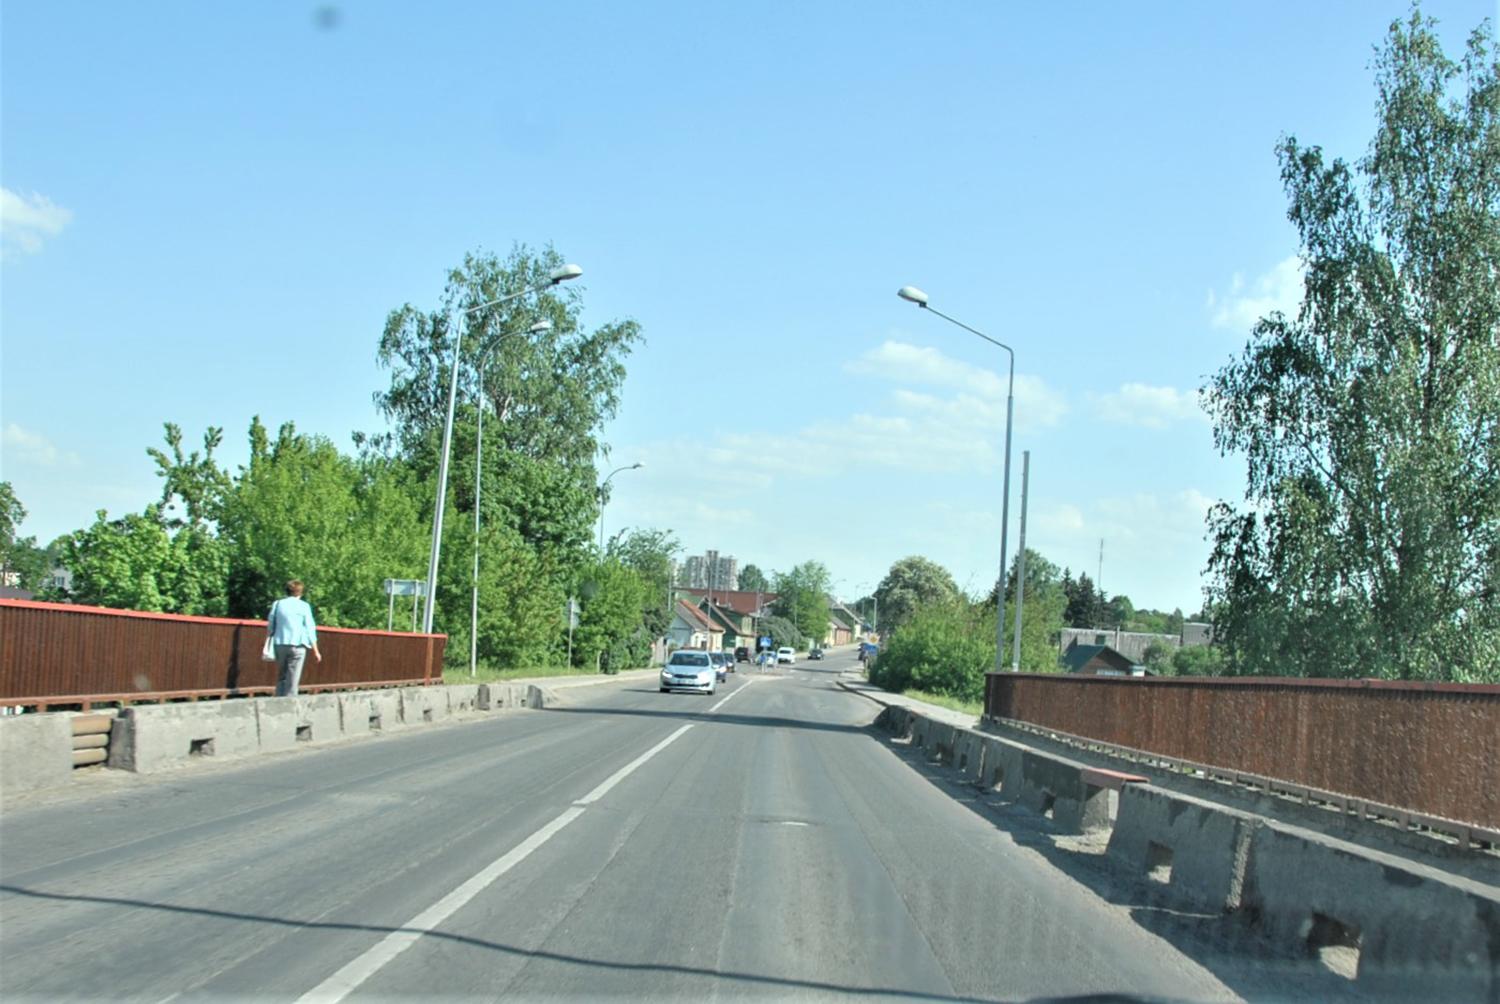 Vilniaus gatvę remontuos – miesto centrą pasieksime aplinkkeliais / Dėl Vilniaus gatvės remonto kurį laiką pagrindinis Ukmergės tiltas bus uždarytas.